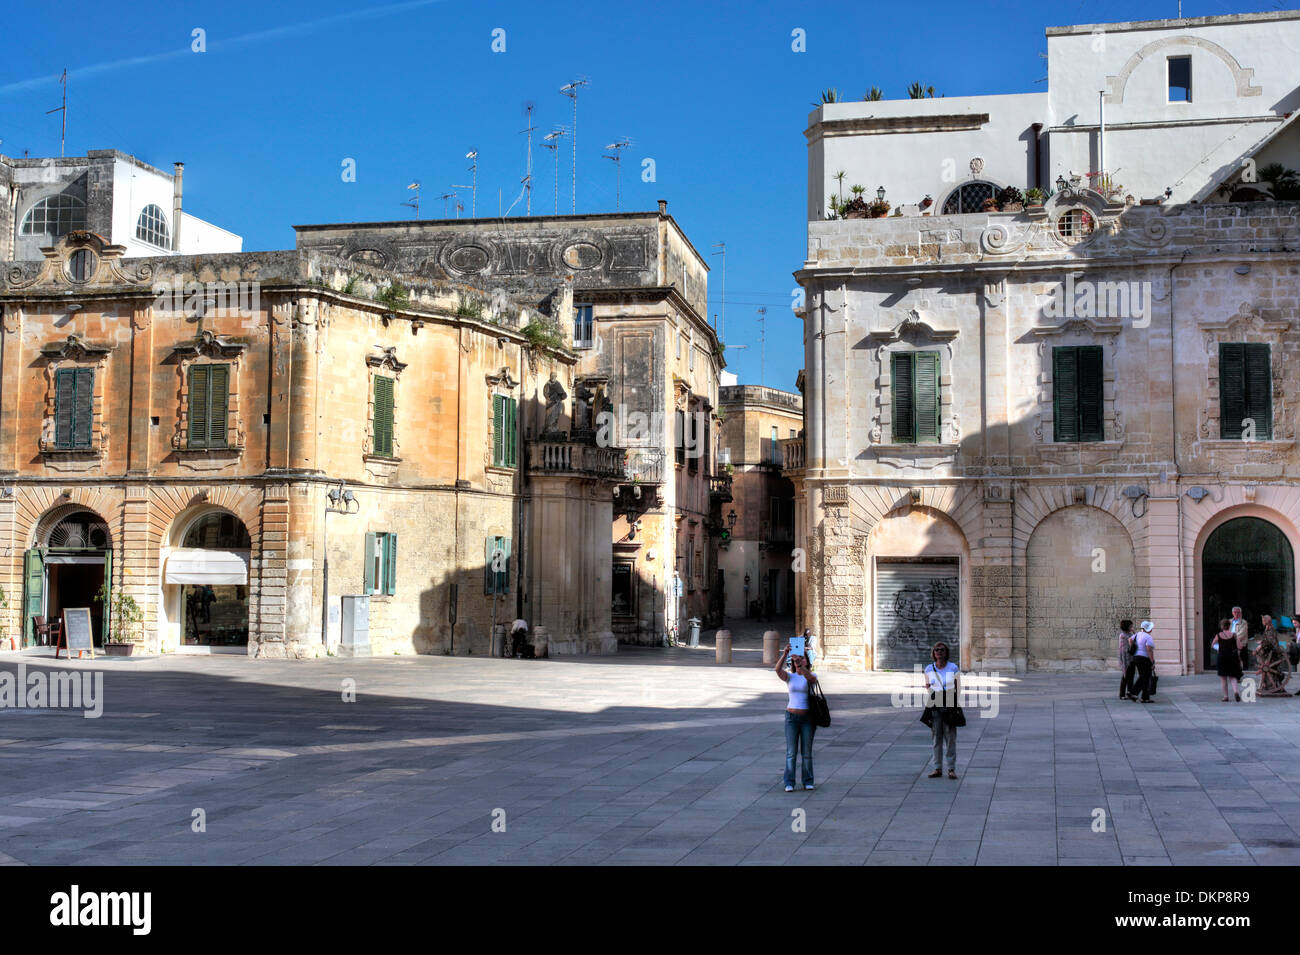 La plaza de la catedral, Lecce, Puglia, Italia Foto de stock